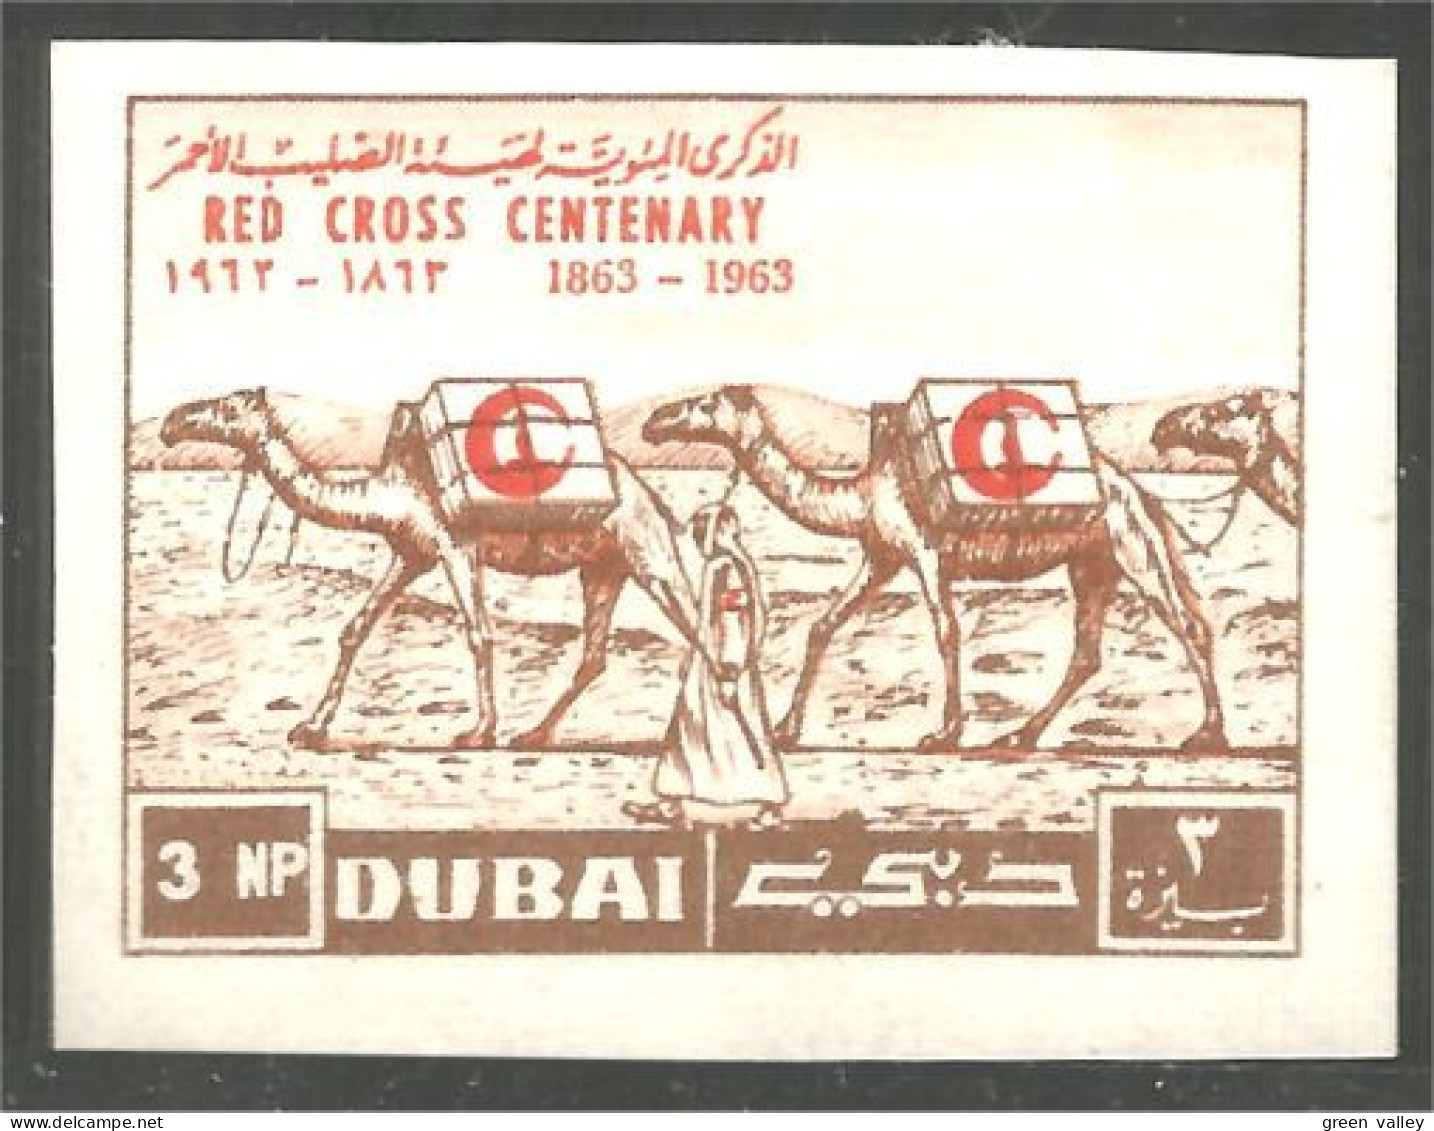 AF-34 Dubai Chameau Camel Dromadaire Non Dentelé Imperforate Croix Rouge Red Cross Rotes Kreuz - Farm